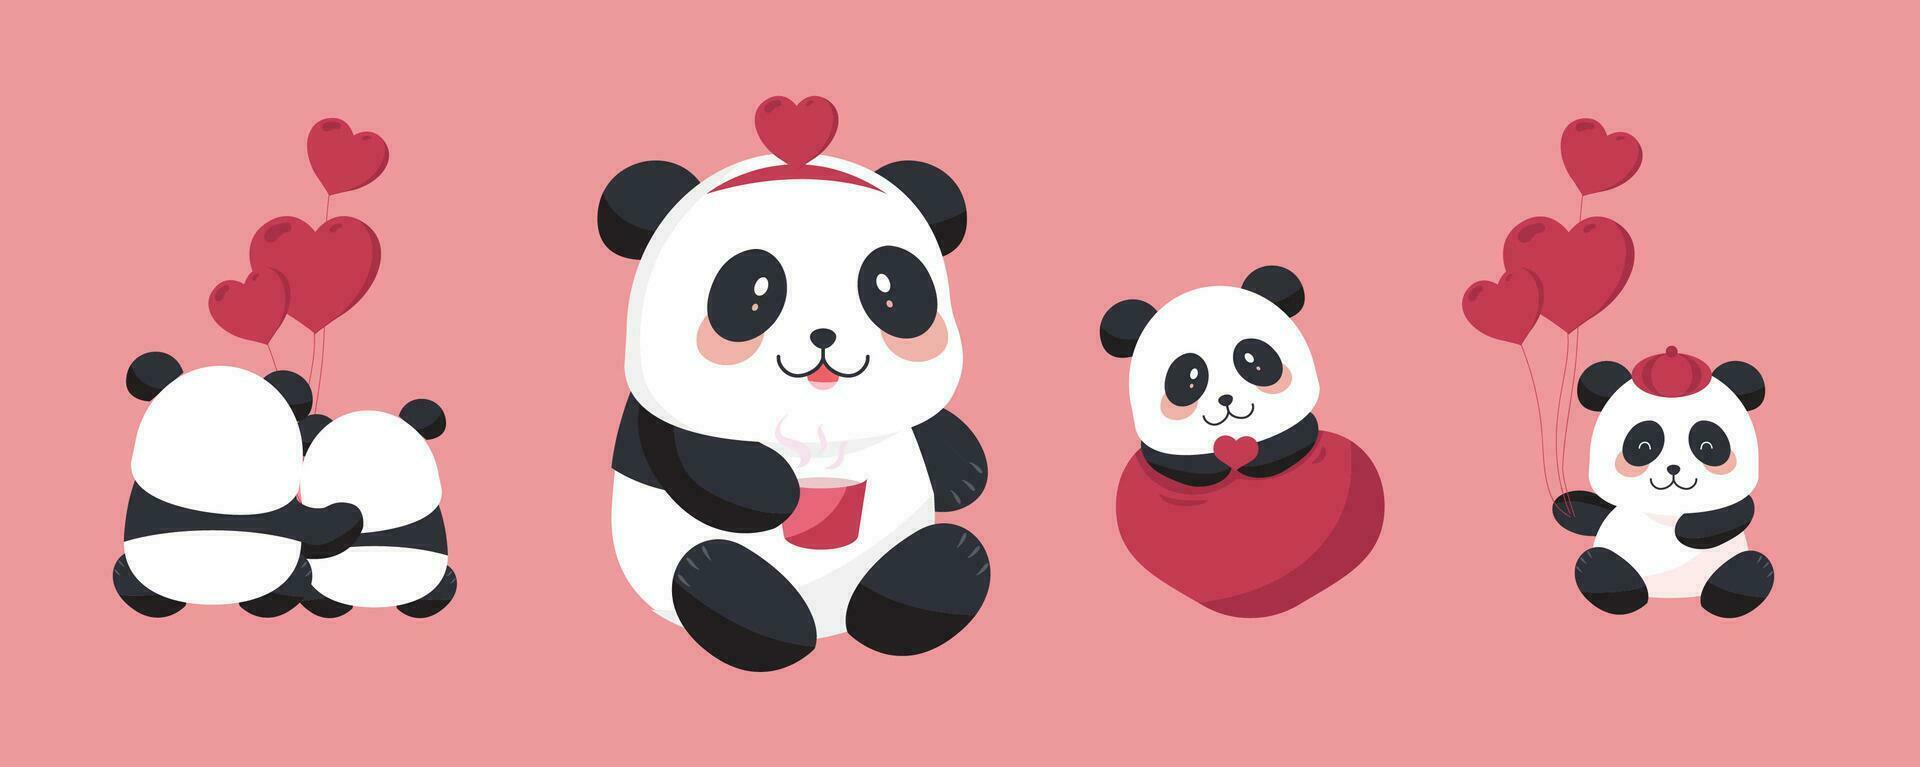 mignonne Panda objet ensemble avec cœur pour la Saint-Valentin jour.illustration vecteur pour carte postale, icône, autocollant